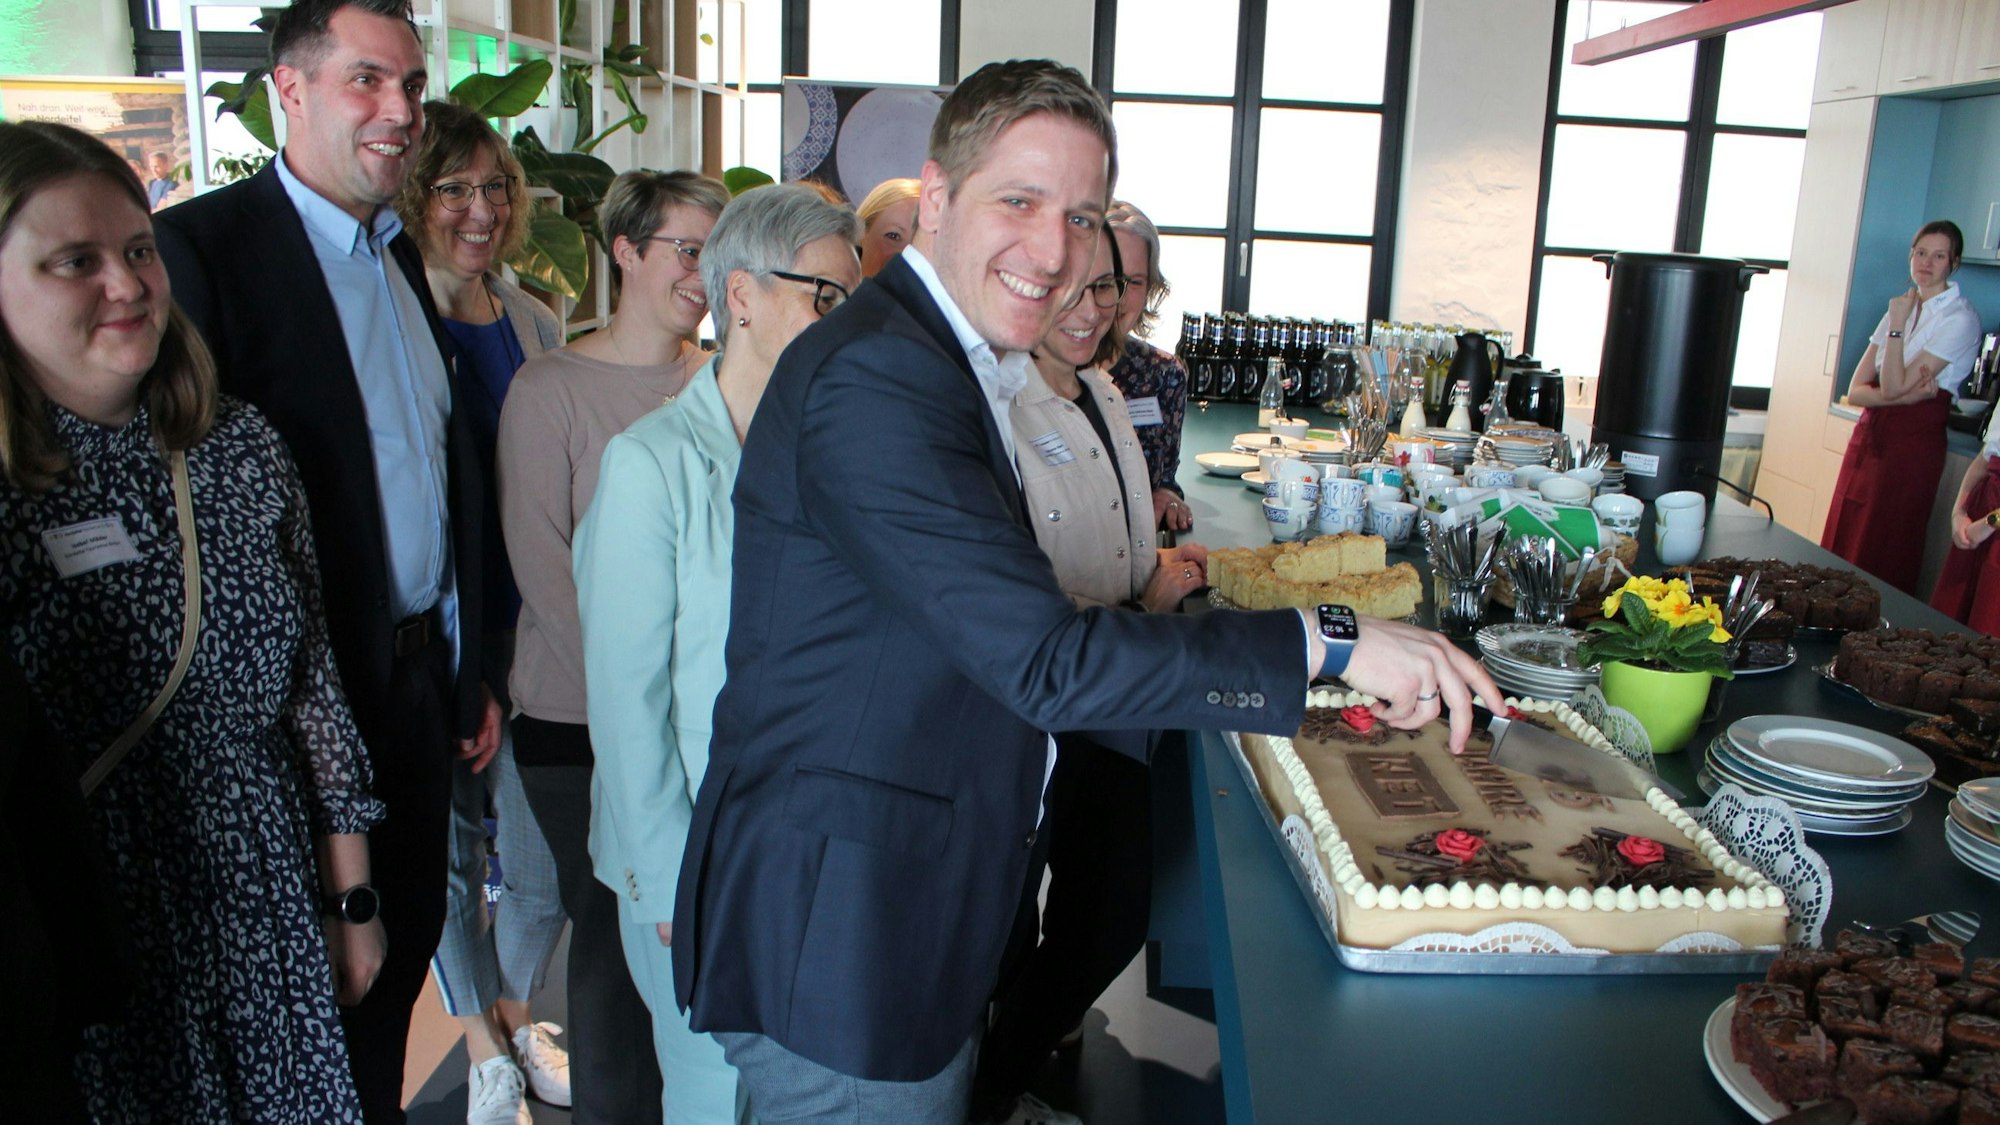 Markus Ramers schneidet eine Torte an, um ihn herum steht das Team der Nordeifel-Tourismus GmbH.